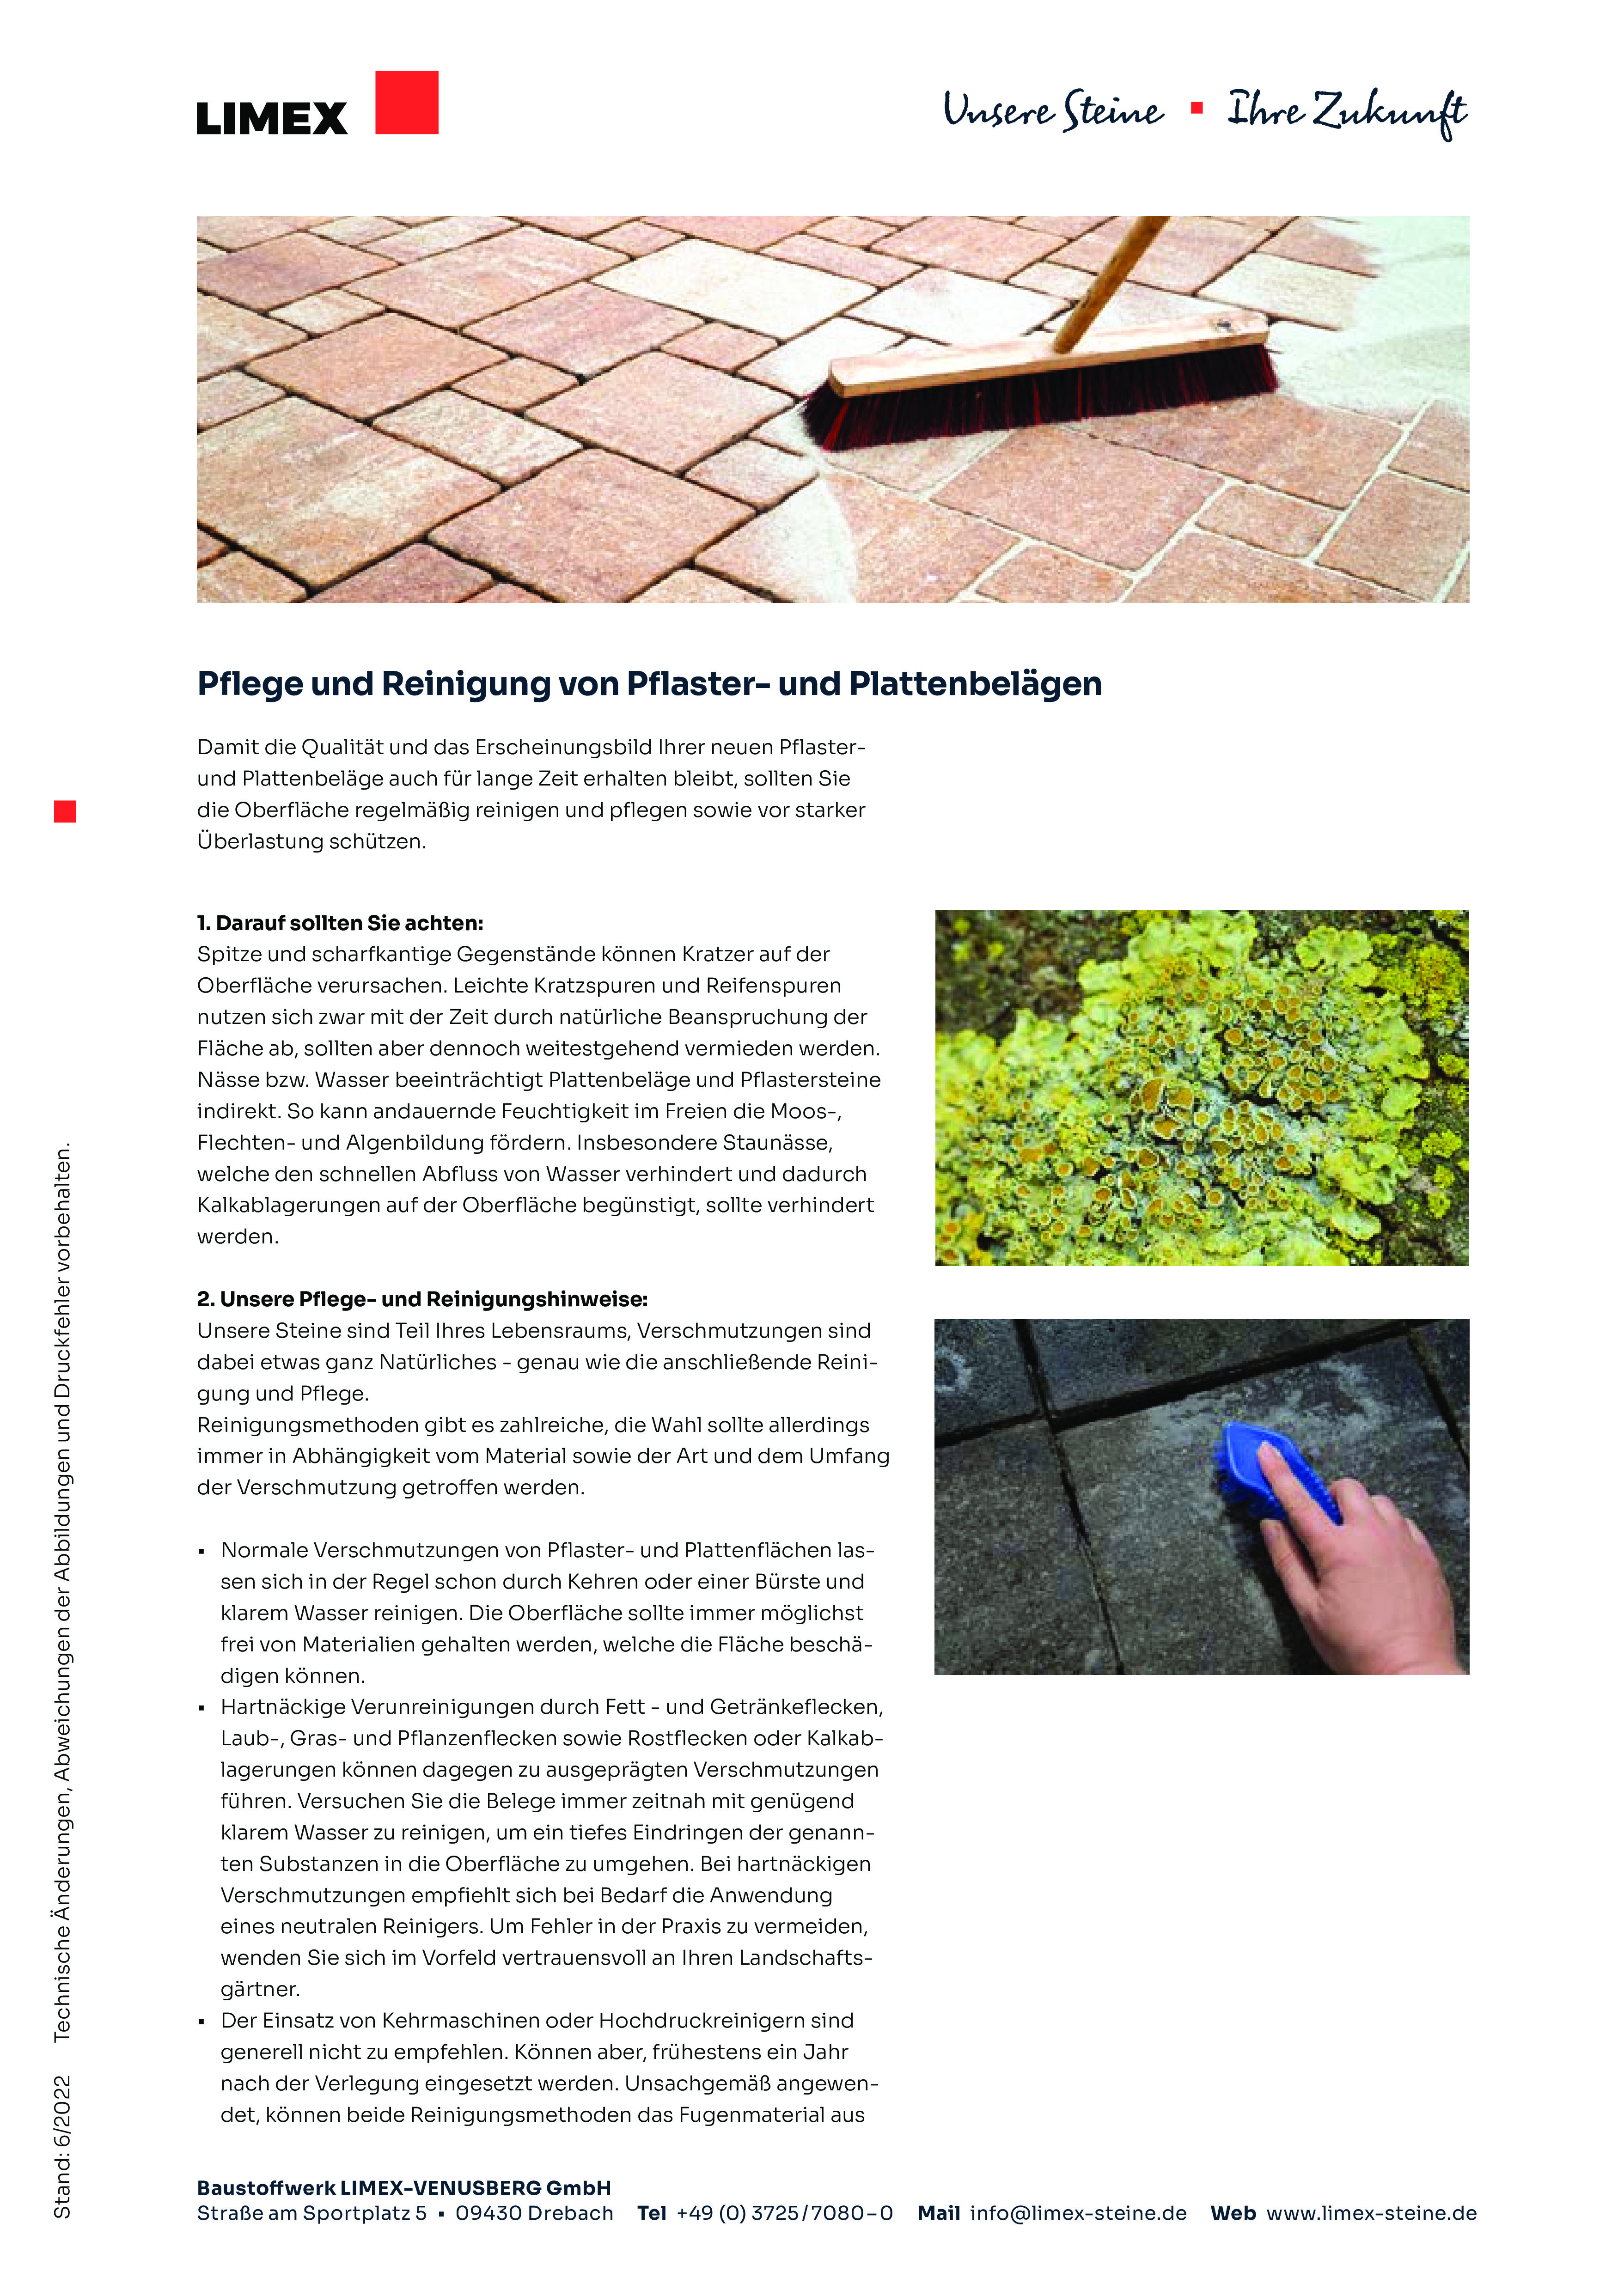 LIMEX Infocenter Pflege Reinigung von Pflaster Platten pdf 1